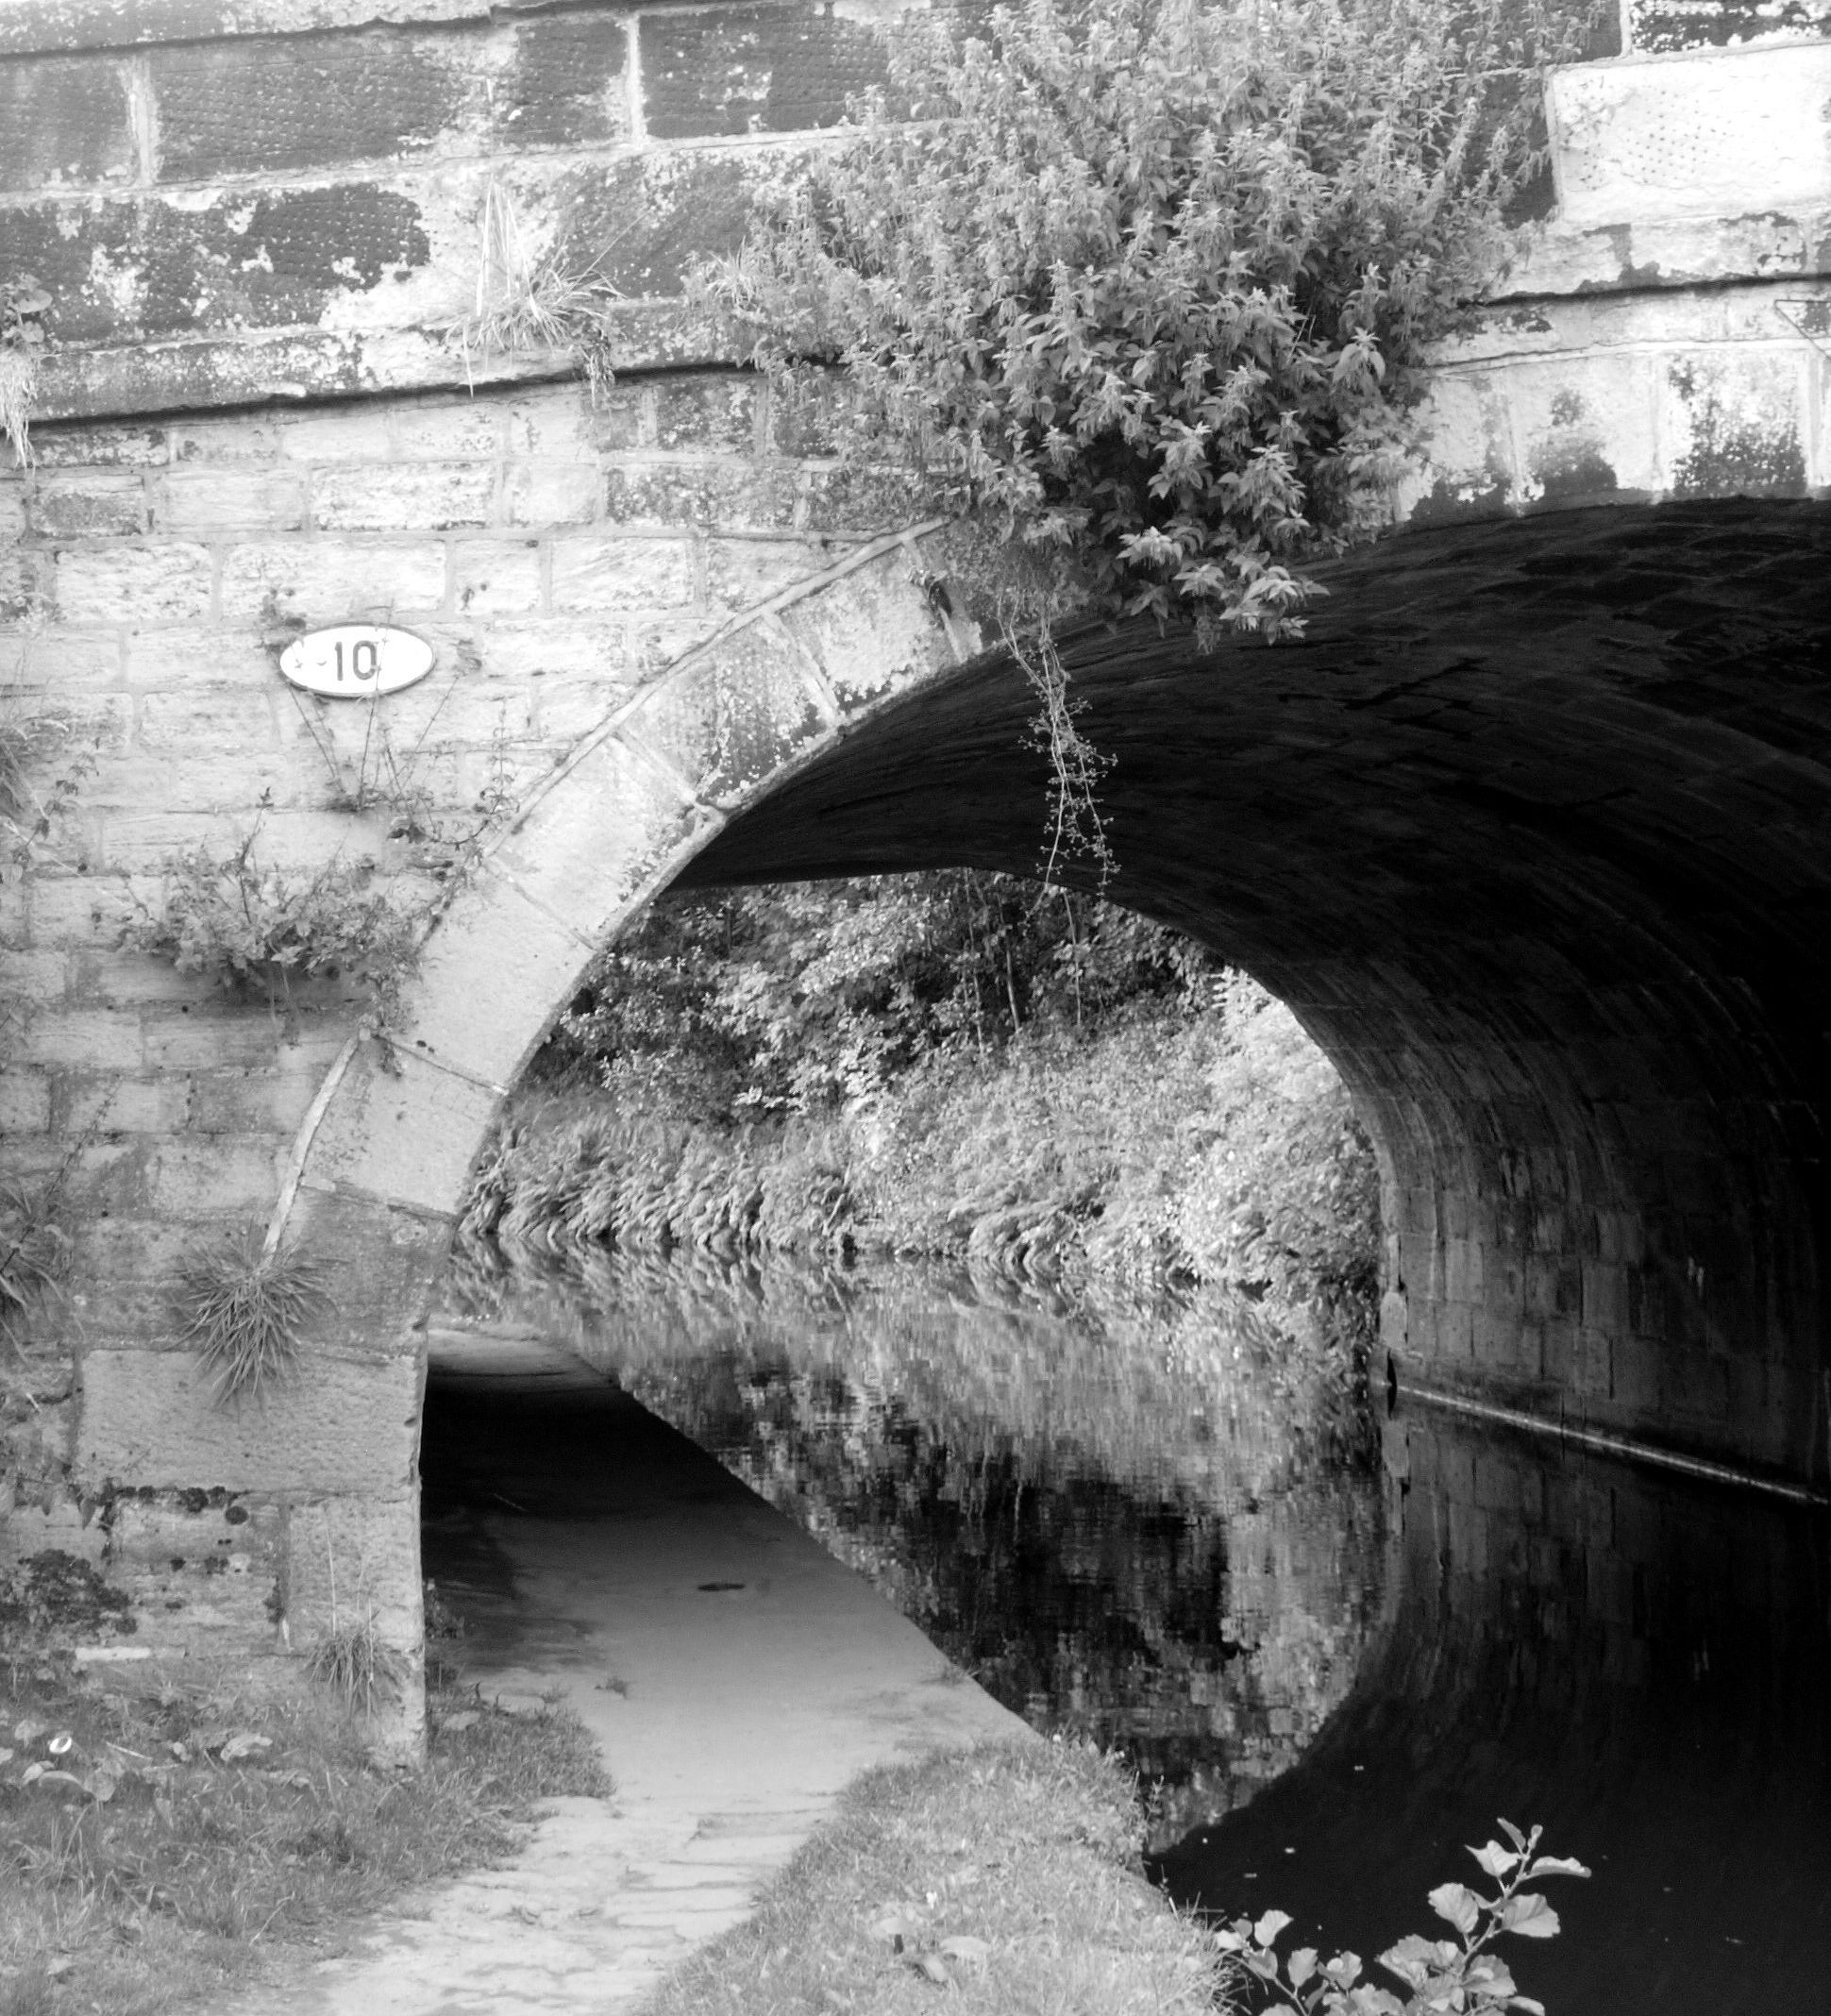 Mytholmroyd Canal